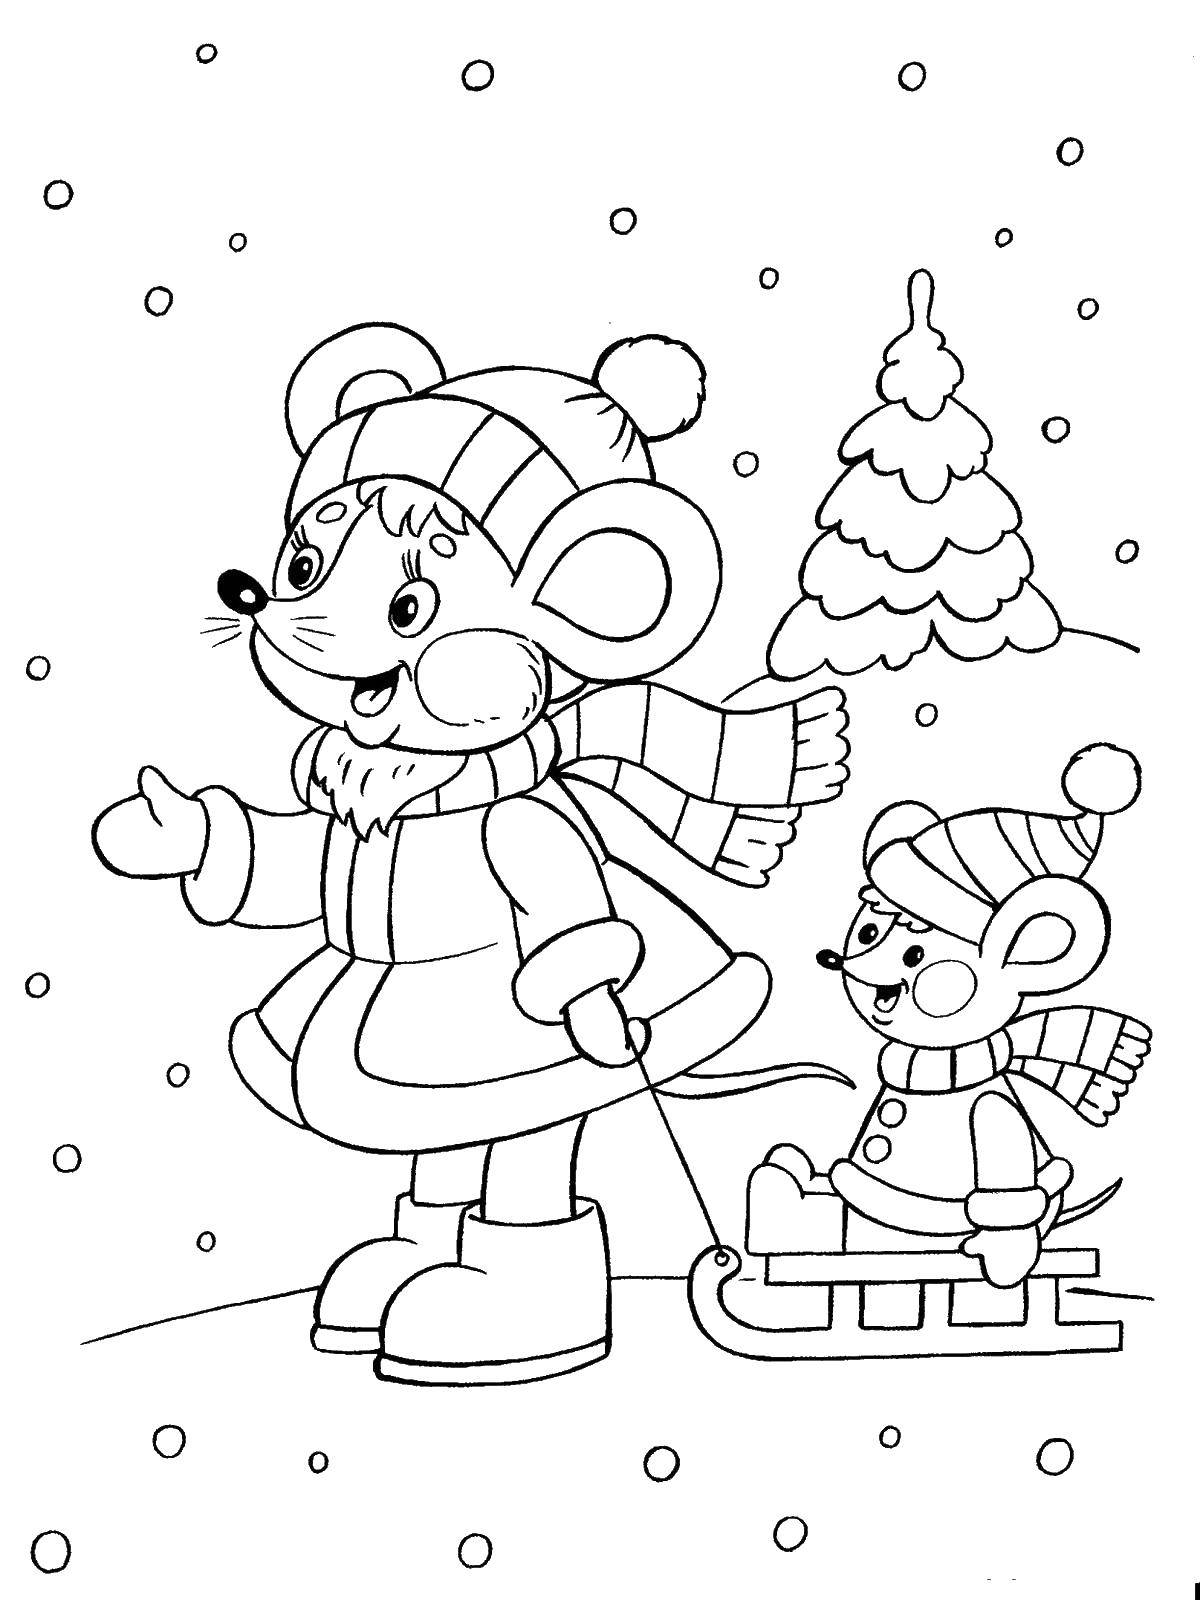 Раскраски для детей Зима, зимушка раскраски для школьников  Мышка везет детеныша на санках